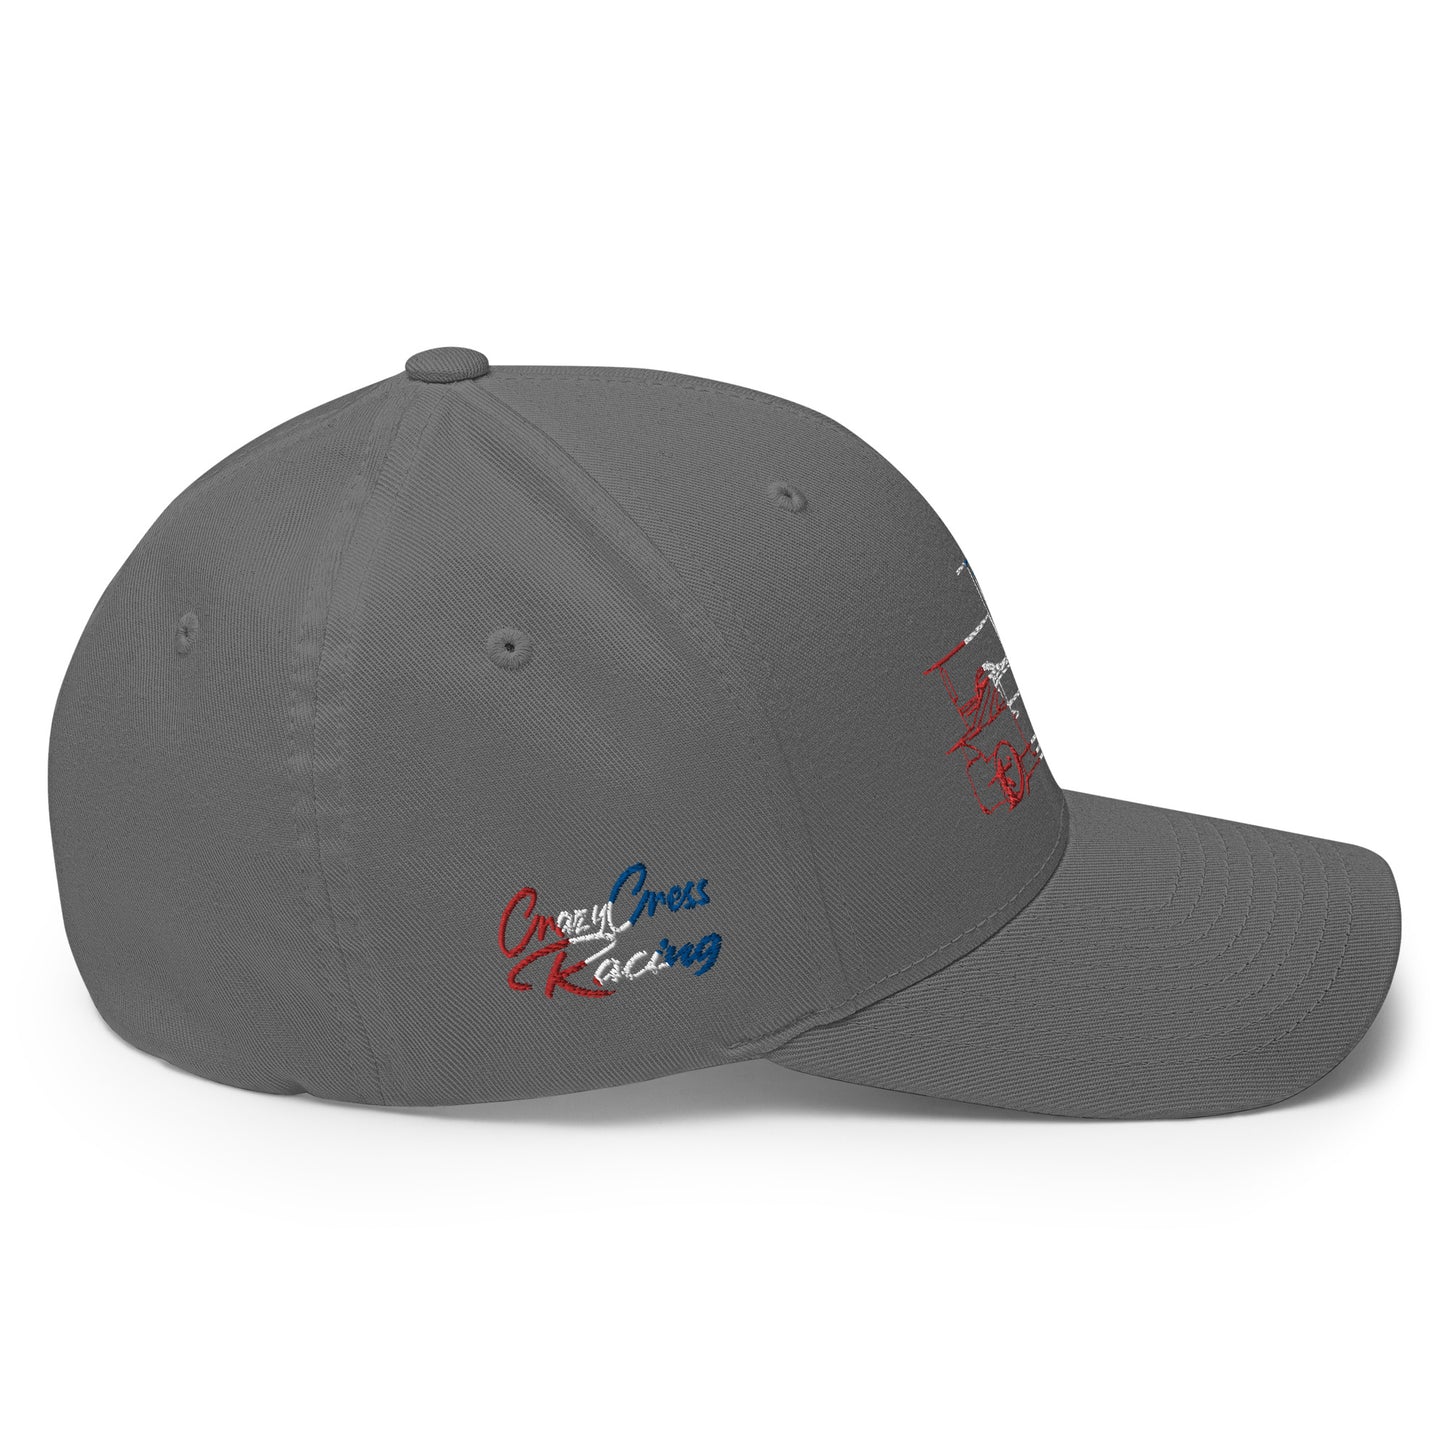 CrazyCressRacing Hat | Flexfit | Red/White/Blue